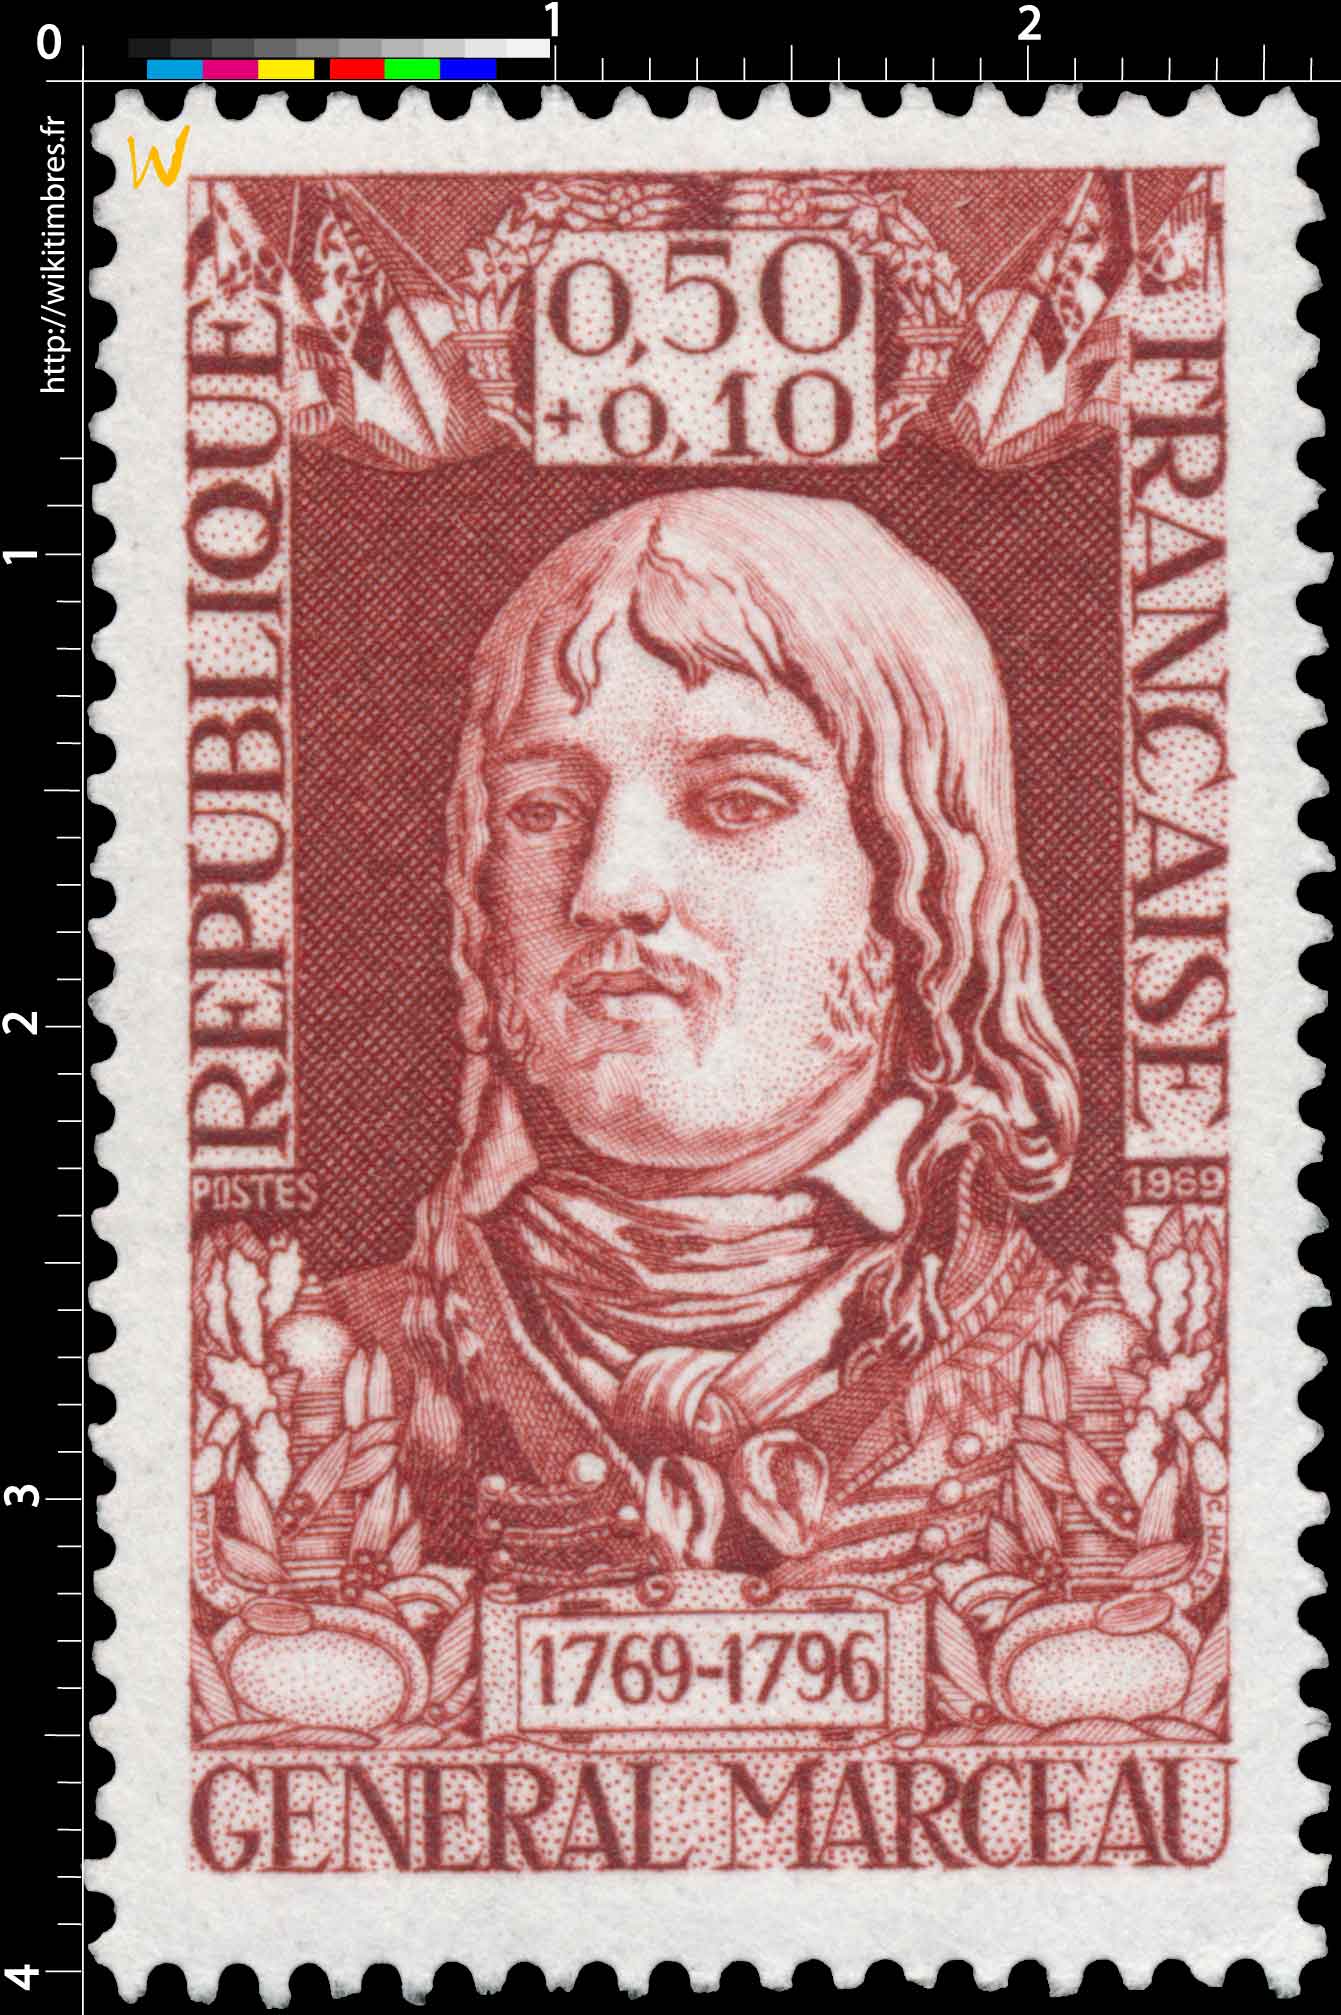 1969 GENERAL MARCEAU 1769-1796